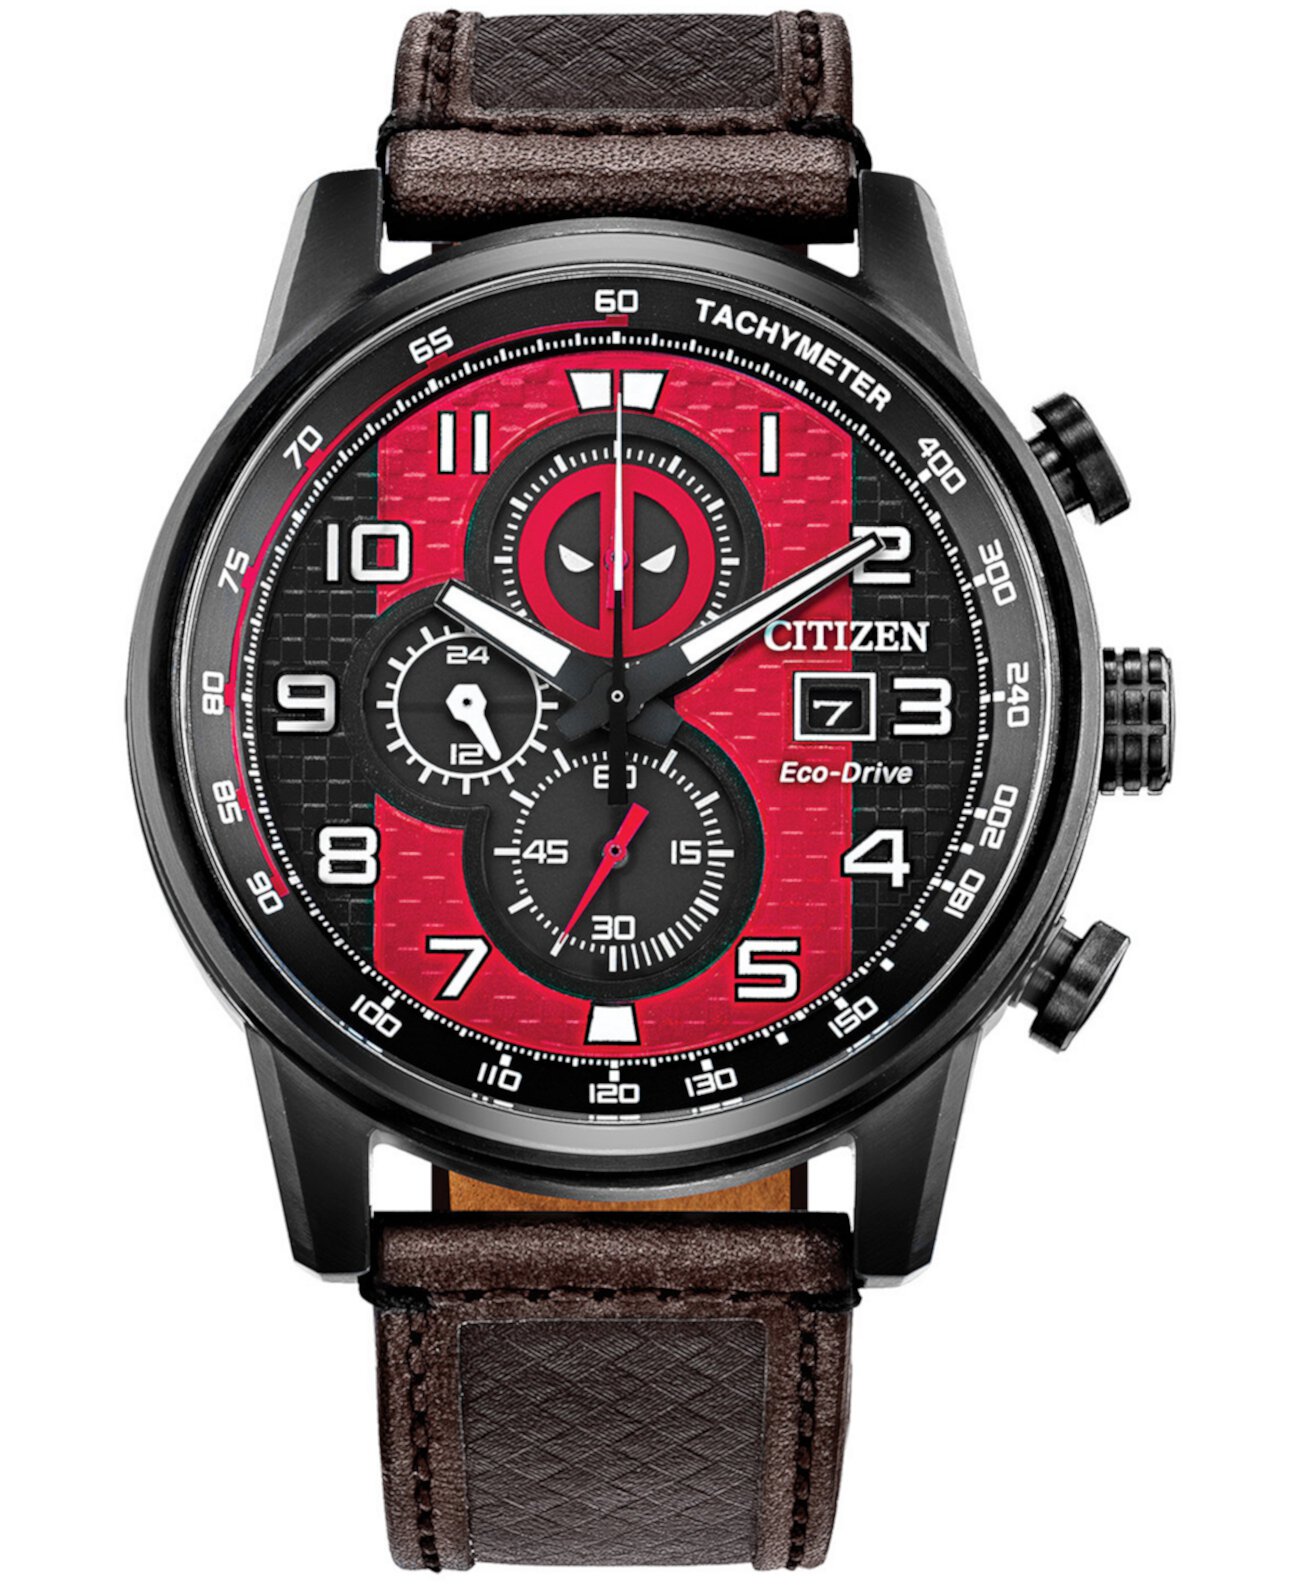 Мужские часы с хронографом Eco-Drive Deadpool с коричневым кожаным ремешком 45 мм Citizen